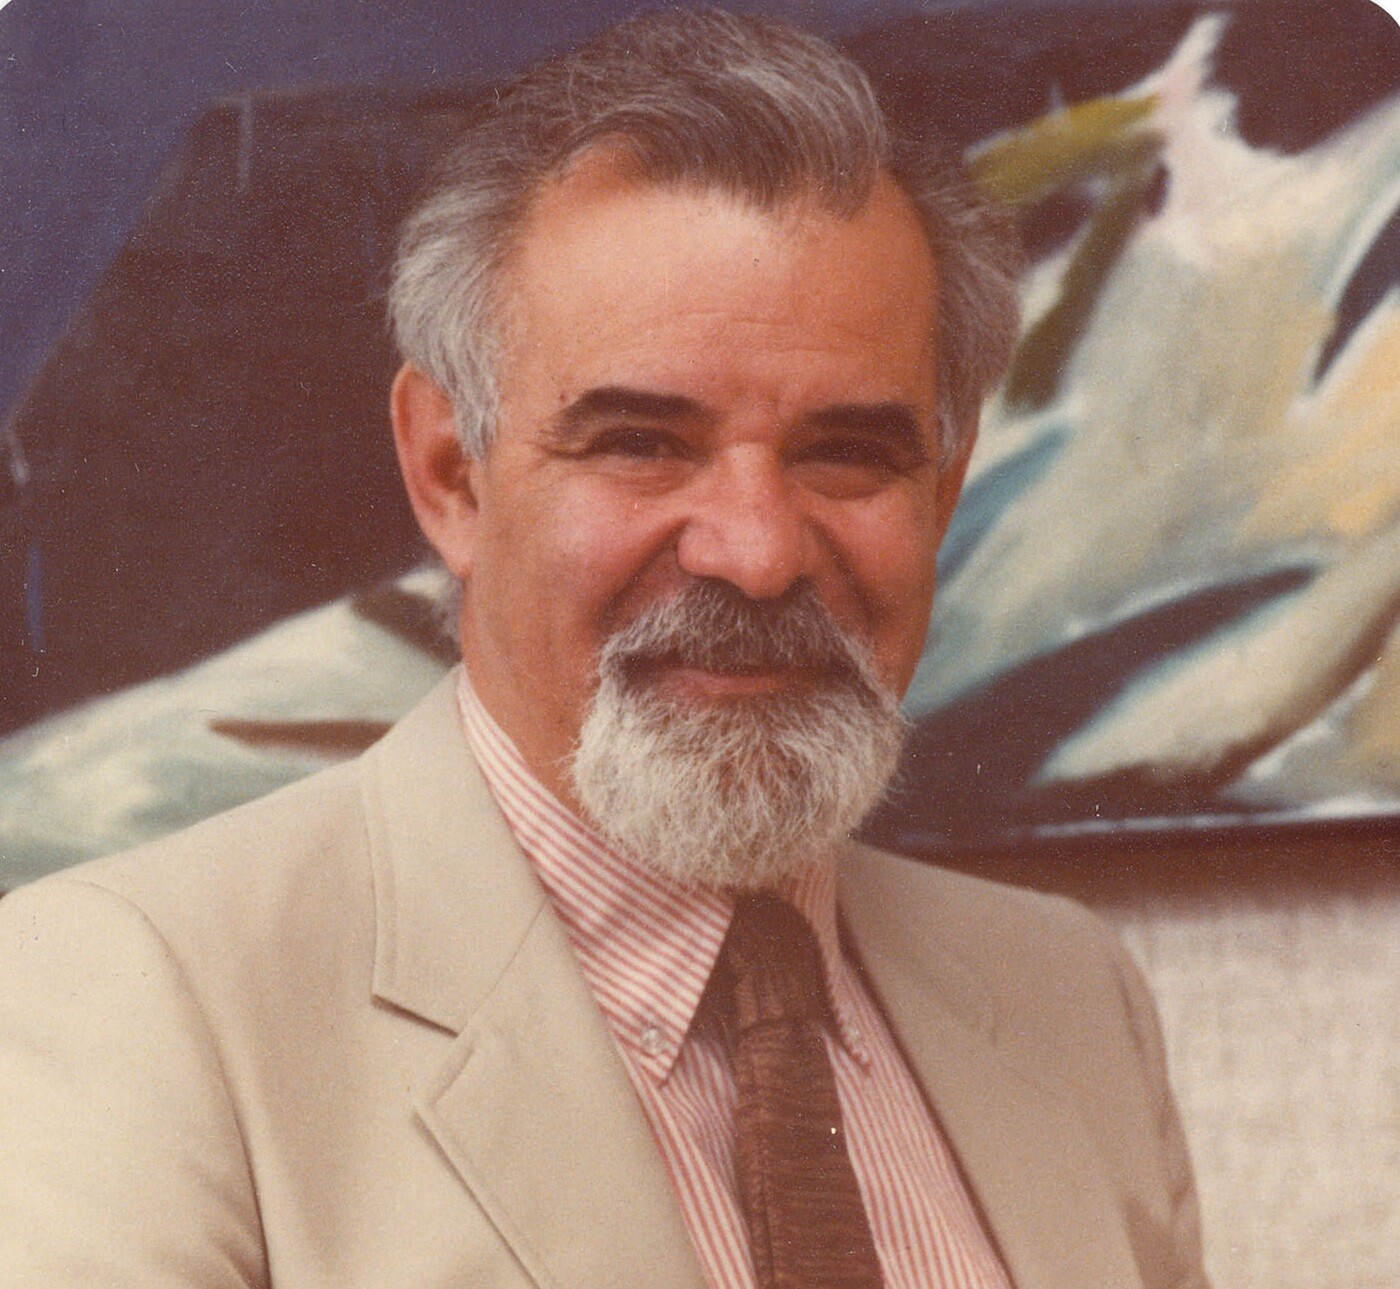 A portrait photo of Dr. Vivian Rakoff